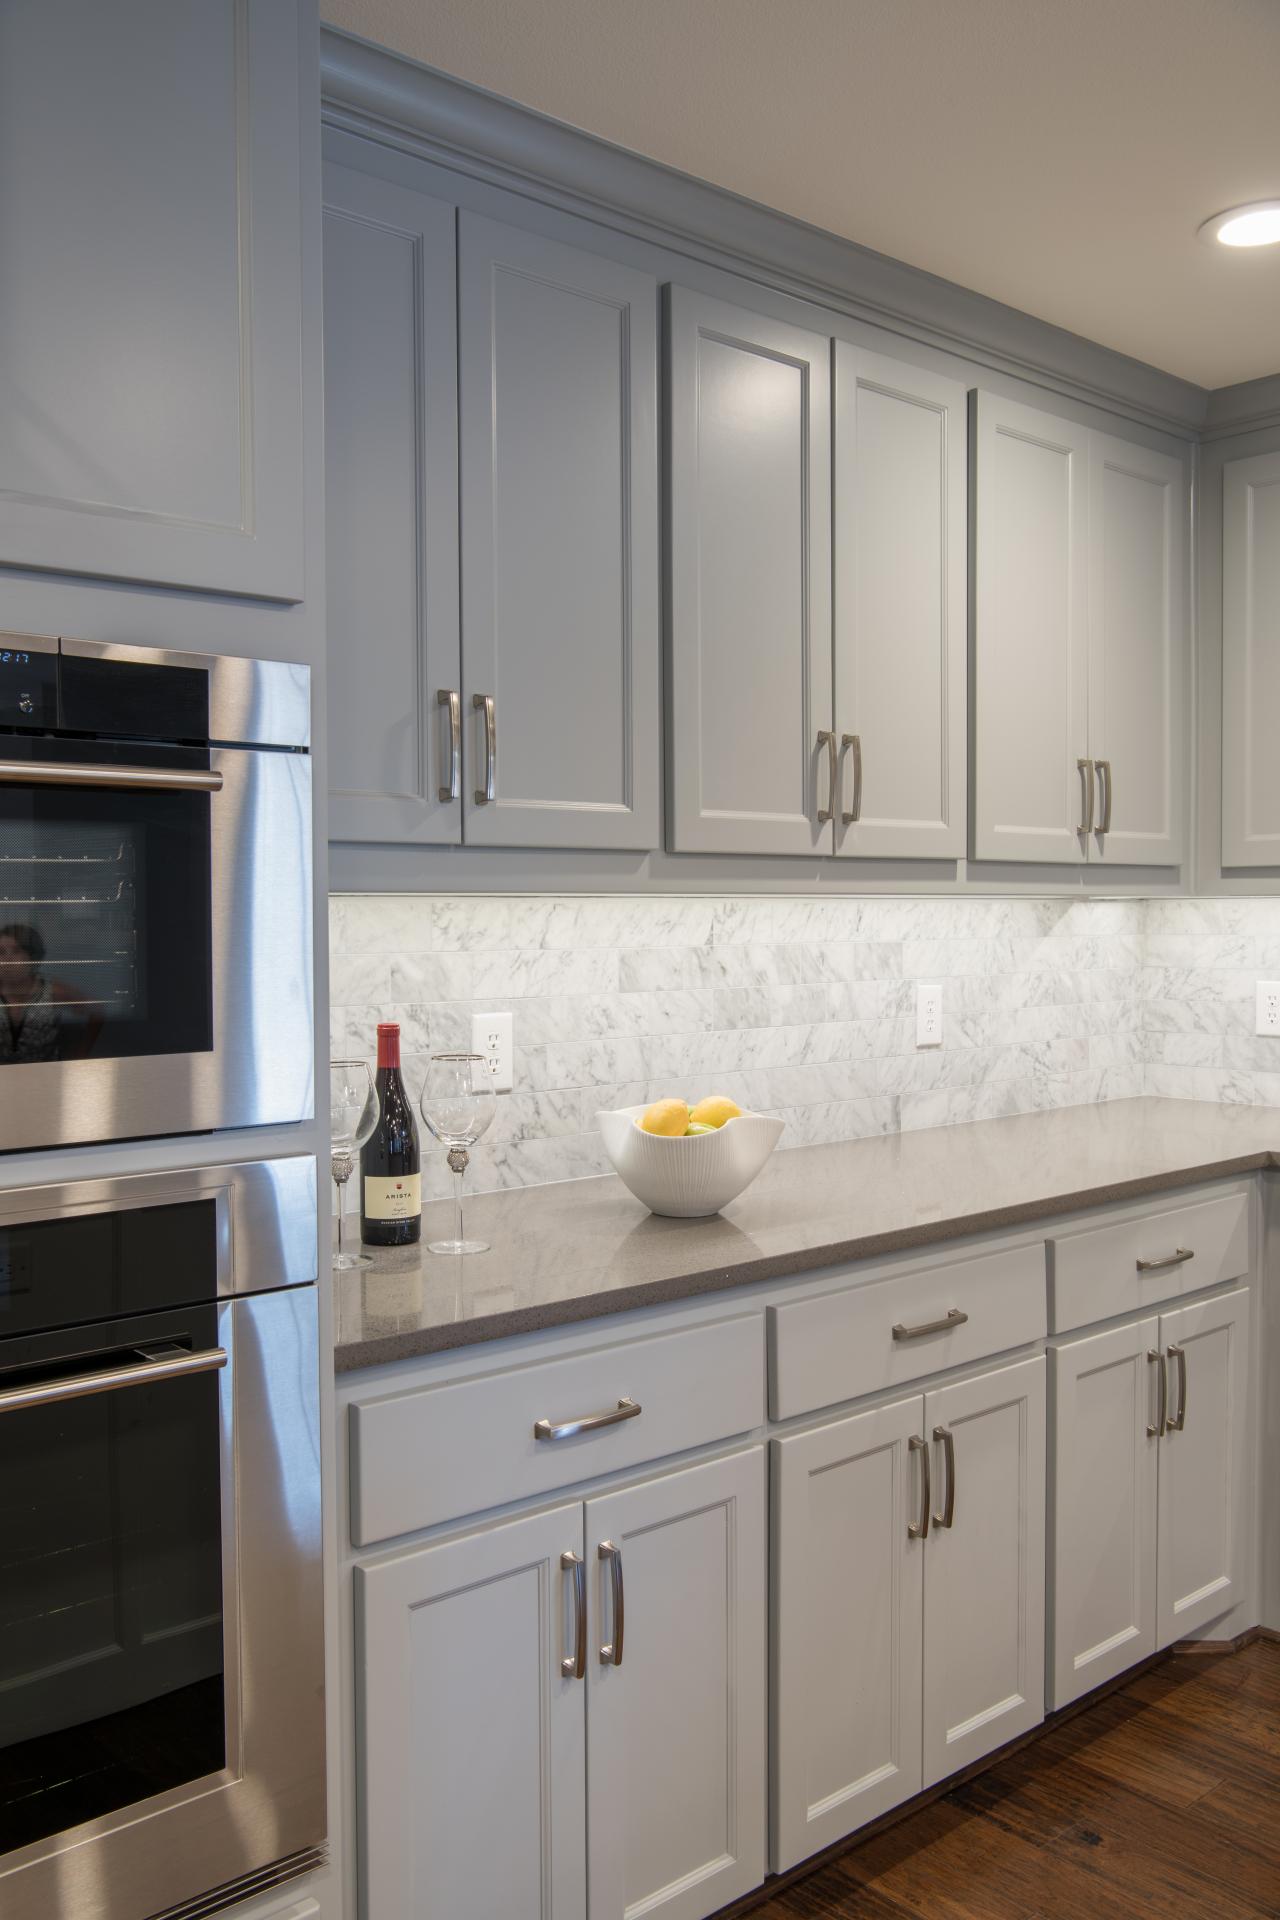 Unique White Kitchen Cabinets Vs Gray with Simple Decor